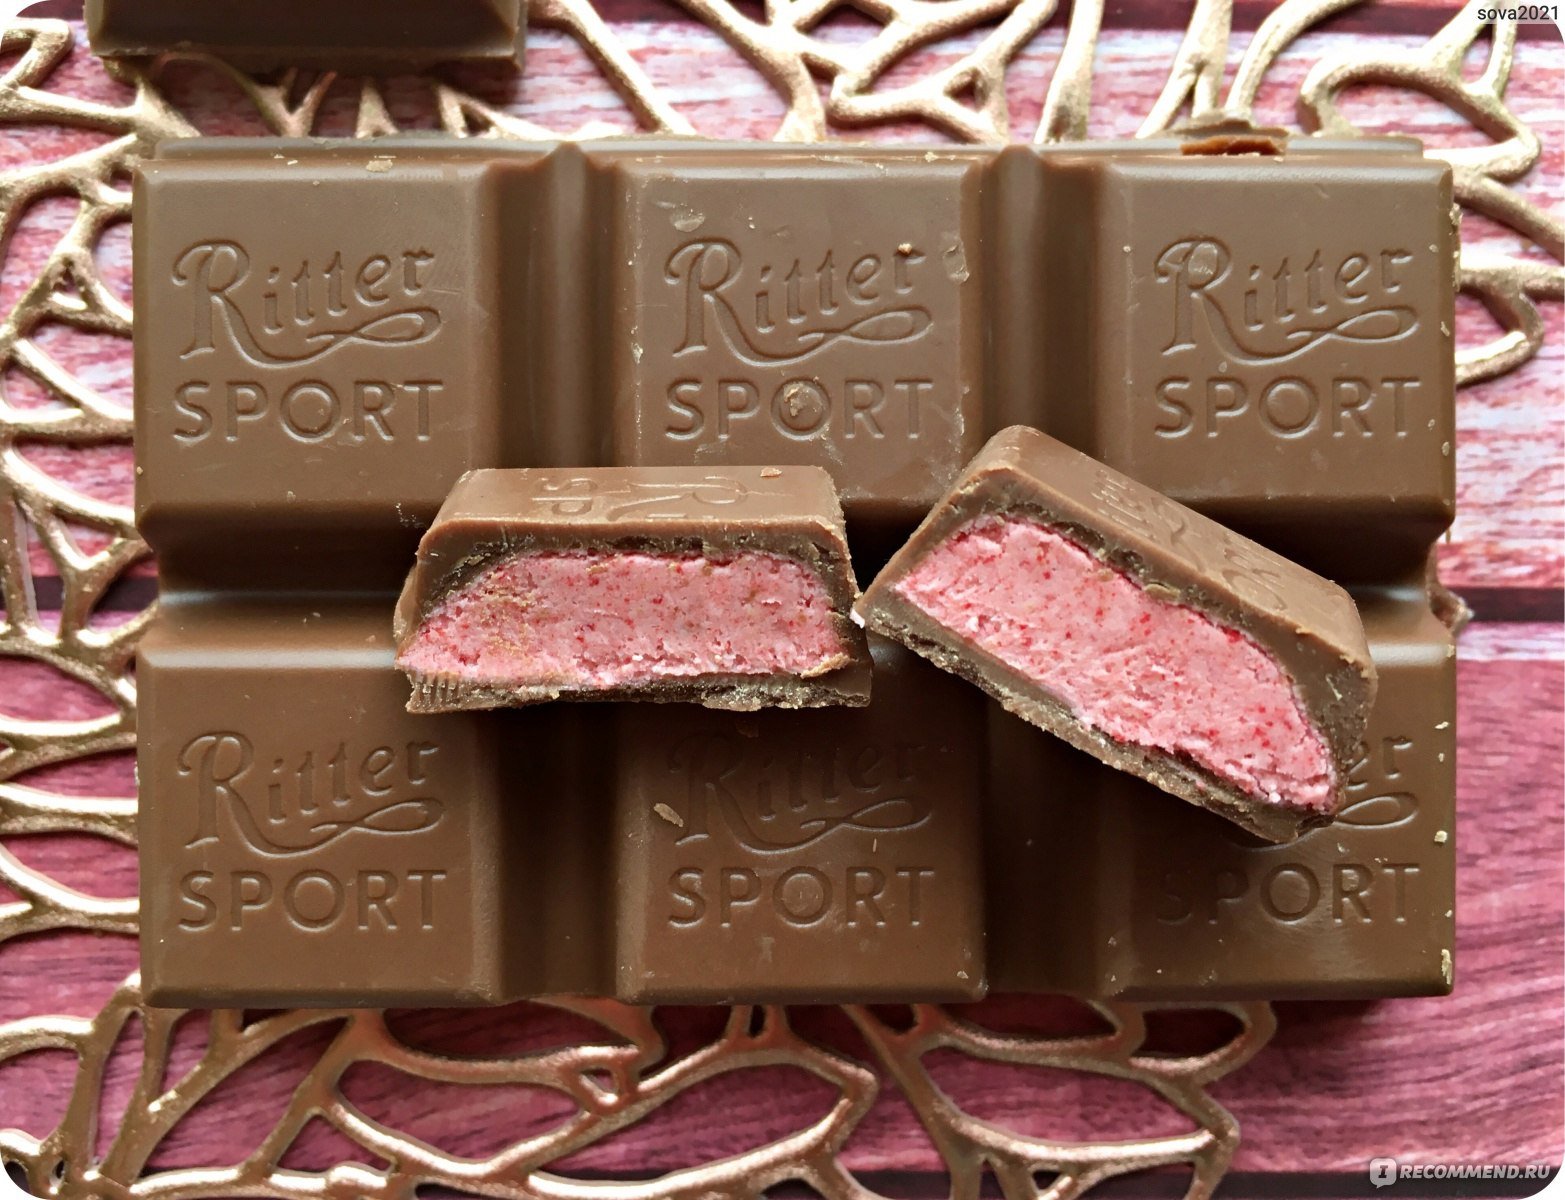 Шоколад Chocopologie by Knipschildt